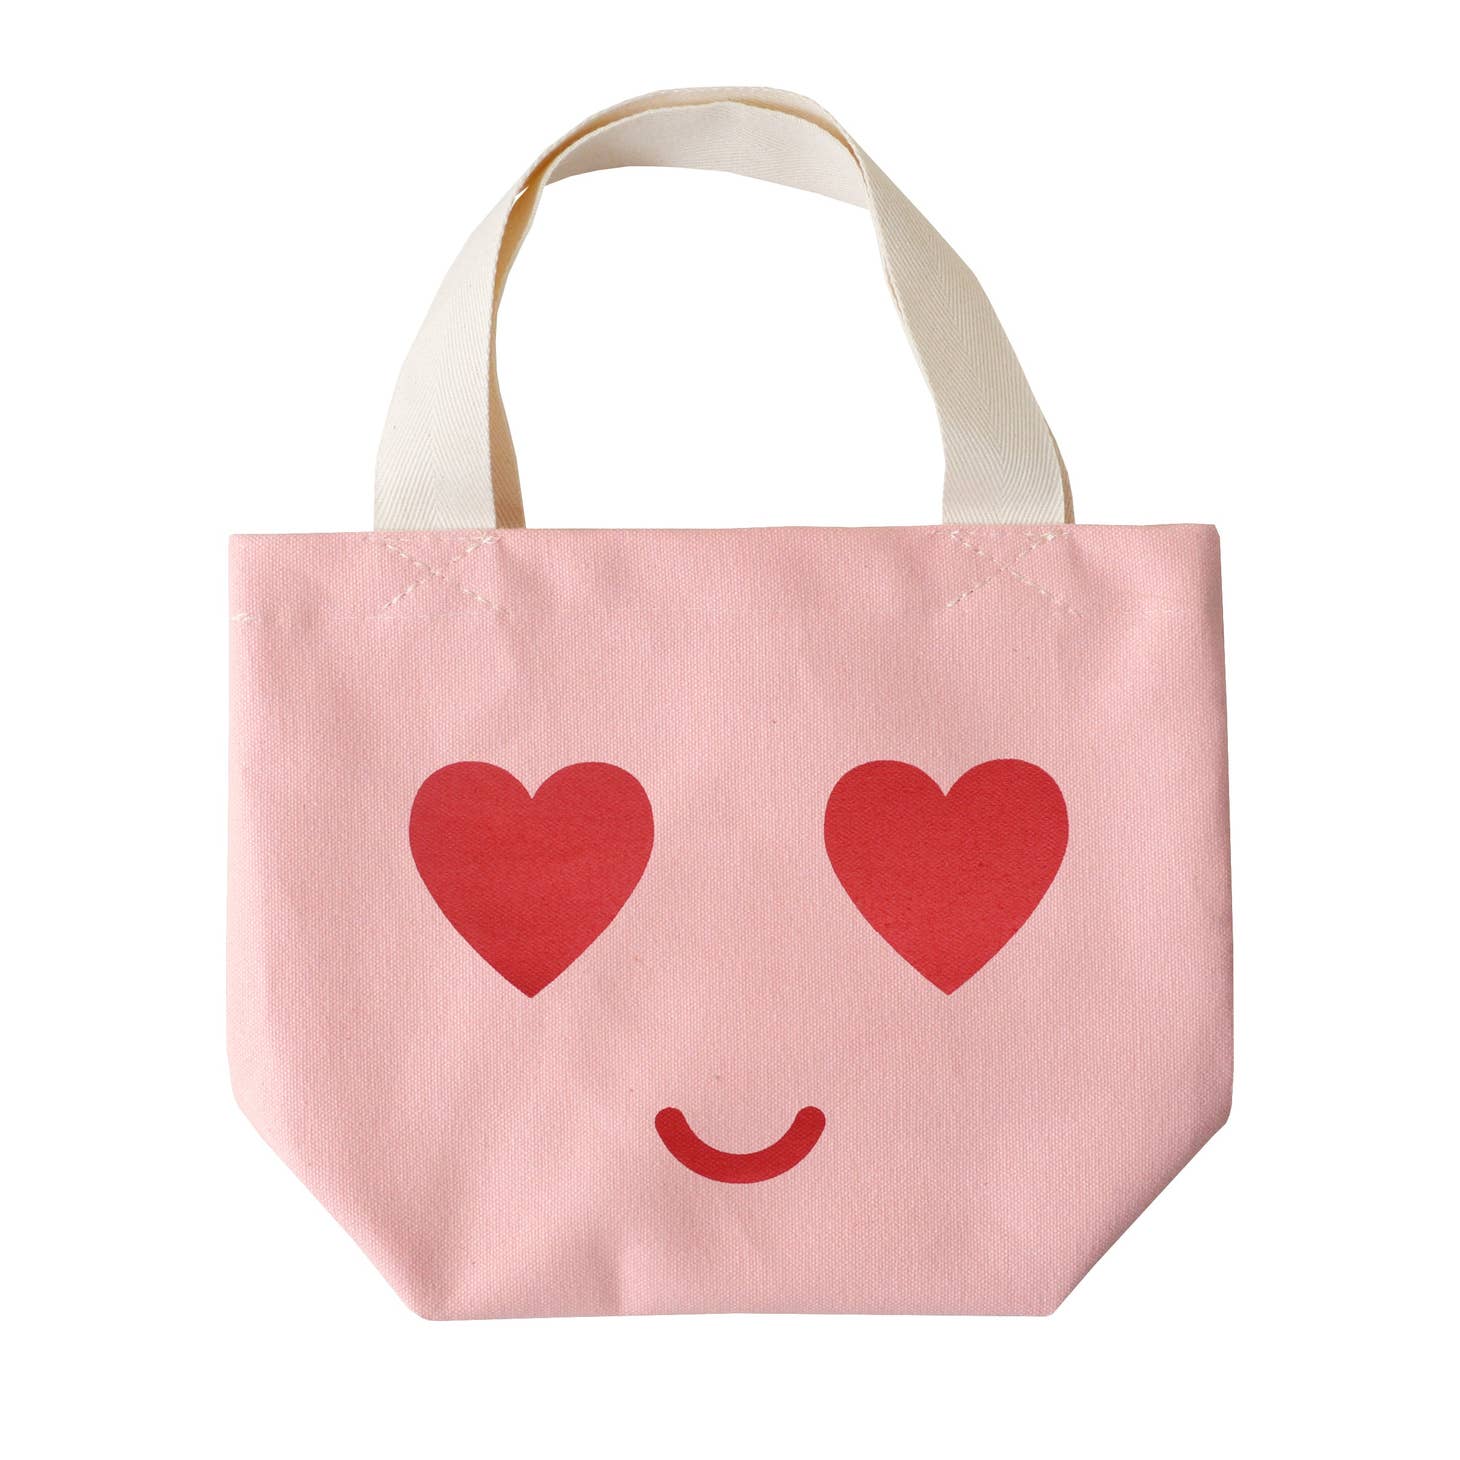 ALPHABETBAGS Heart Eyes - Little Pink Bag